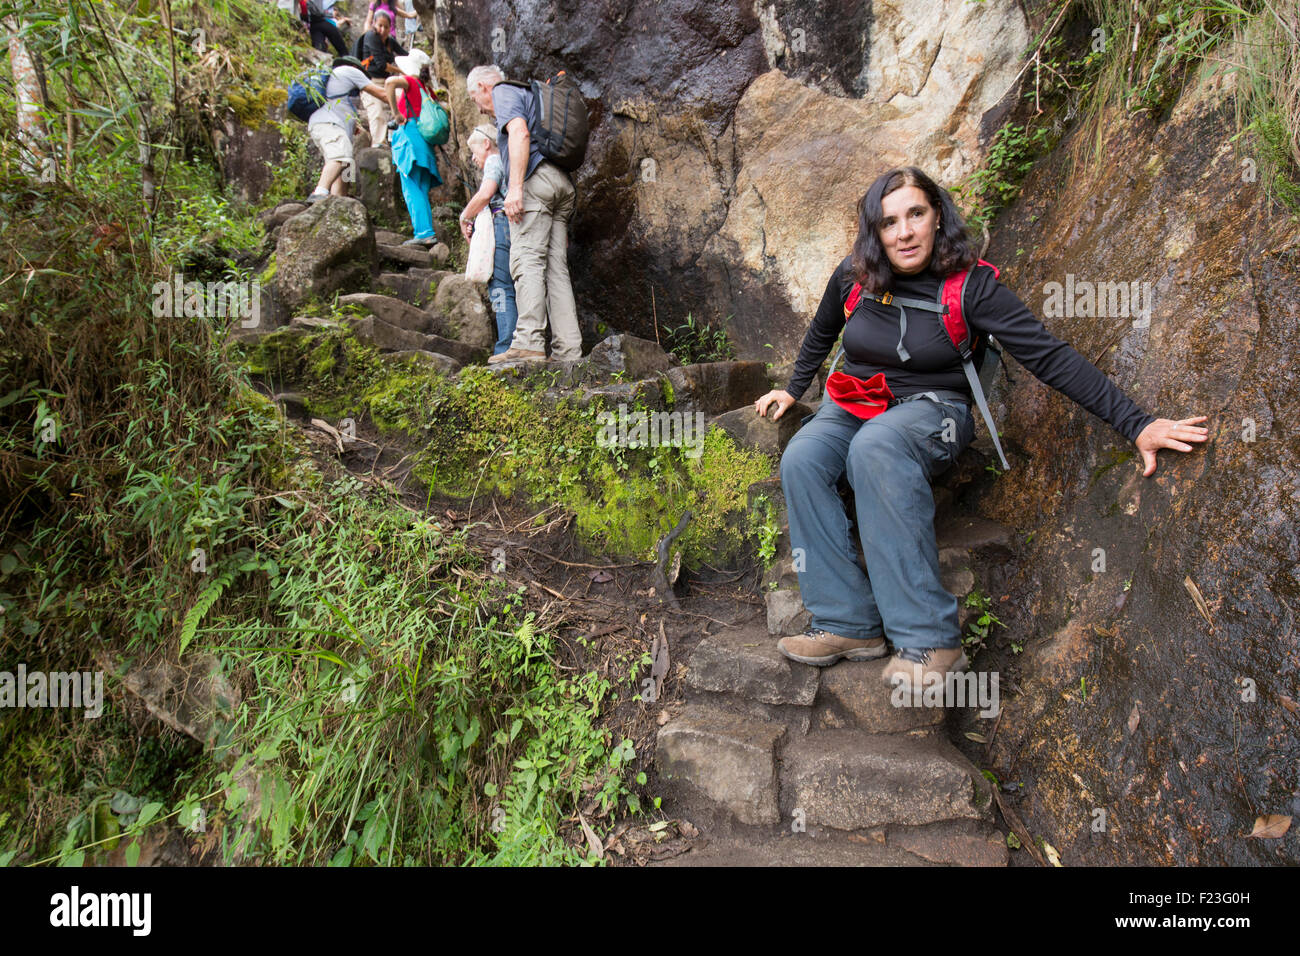 Peru, Urubamba Province, Woman hiking down dangerously steep and wet stairs on trail up Huayna Picchu near Machu Picchu ruins Stock Photo